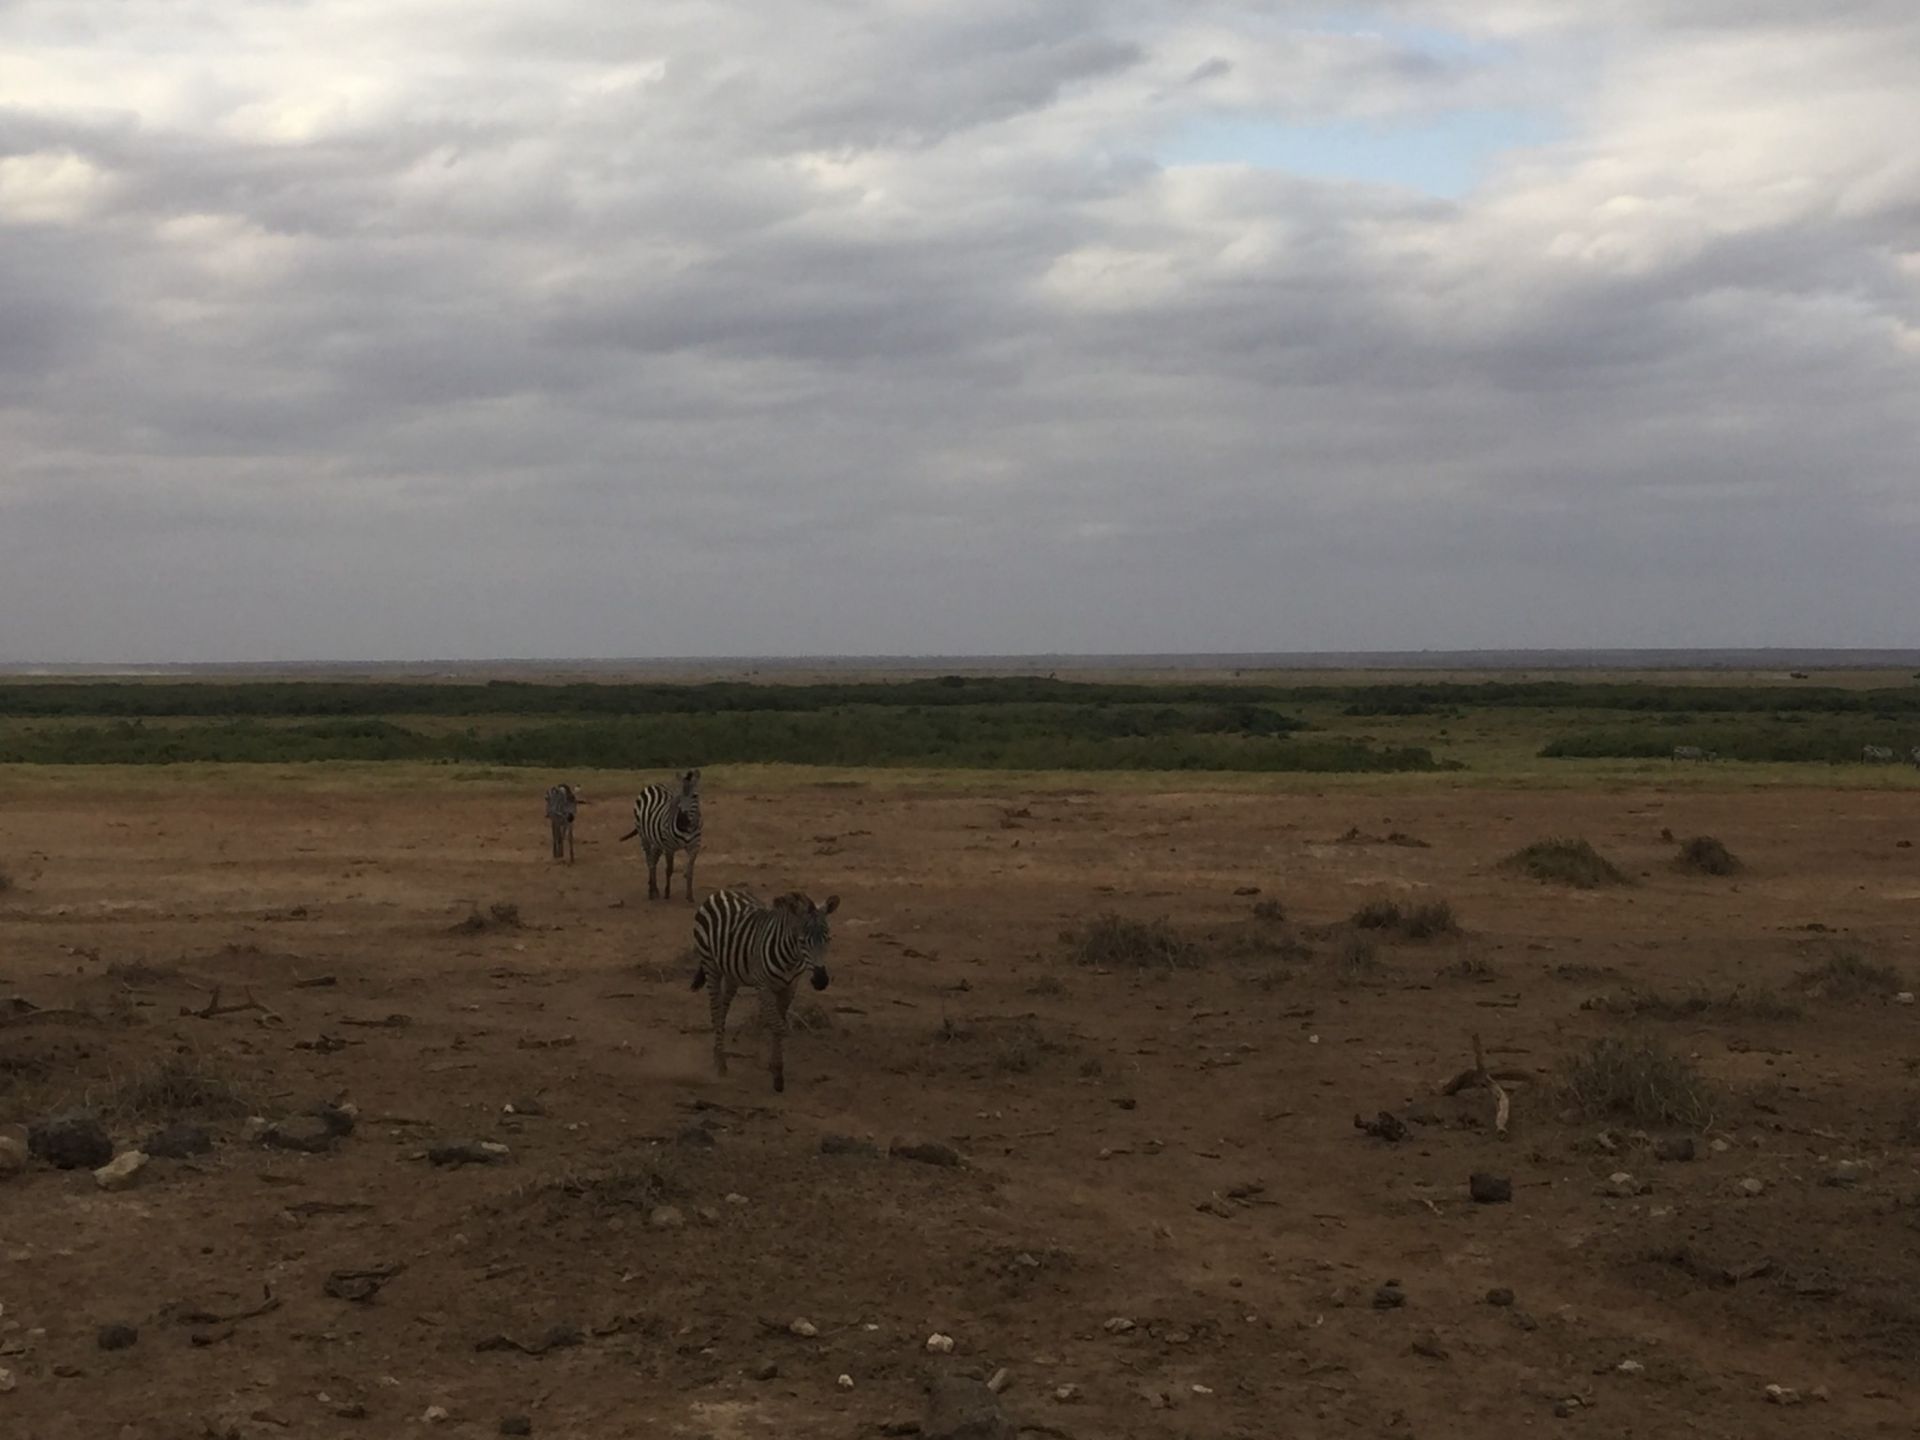 桑布鲁自然保护区是一片广袤的非洲大草原，这里的视野非常的开阔。生活着许多非洲草原上的野生动物，长颈鹿